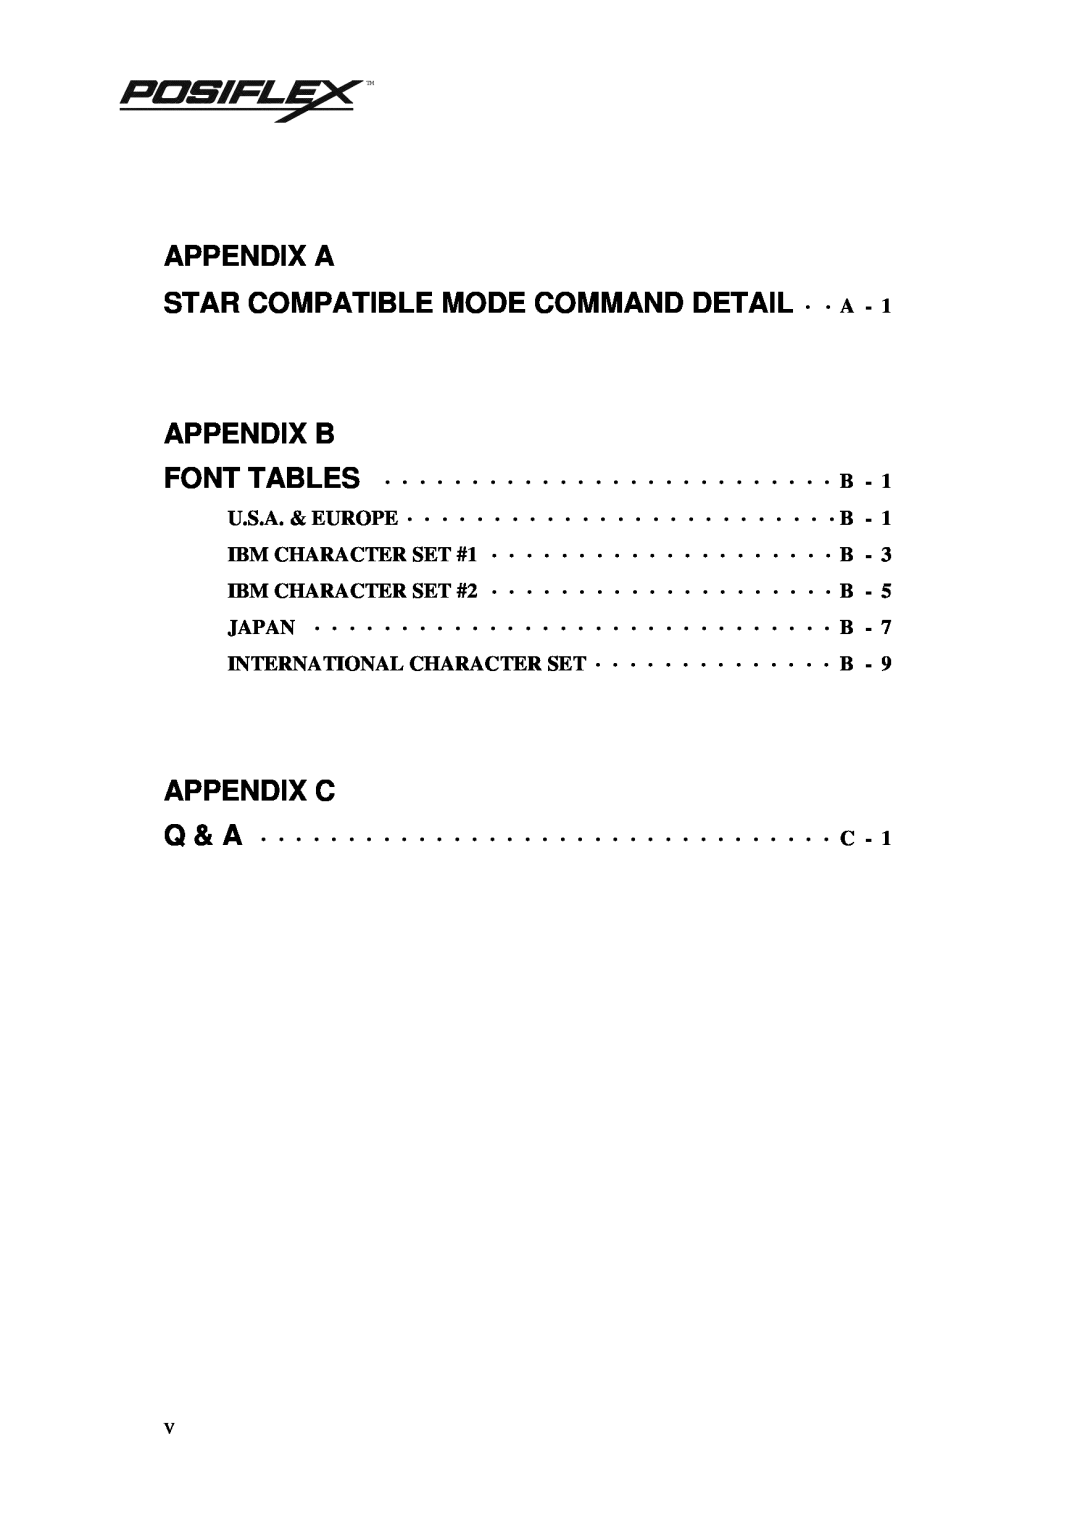 POSIFLEX Business Machines PP3000 manual Appendix A Star Compatible Mode Command Detail · · A, Appendix C 